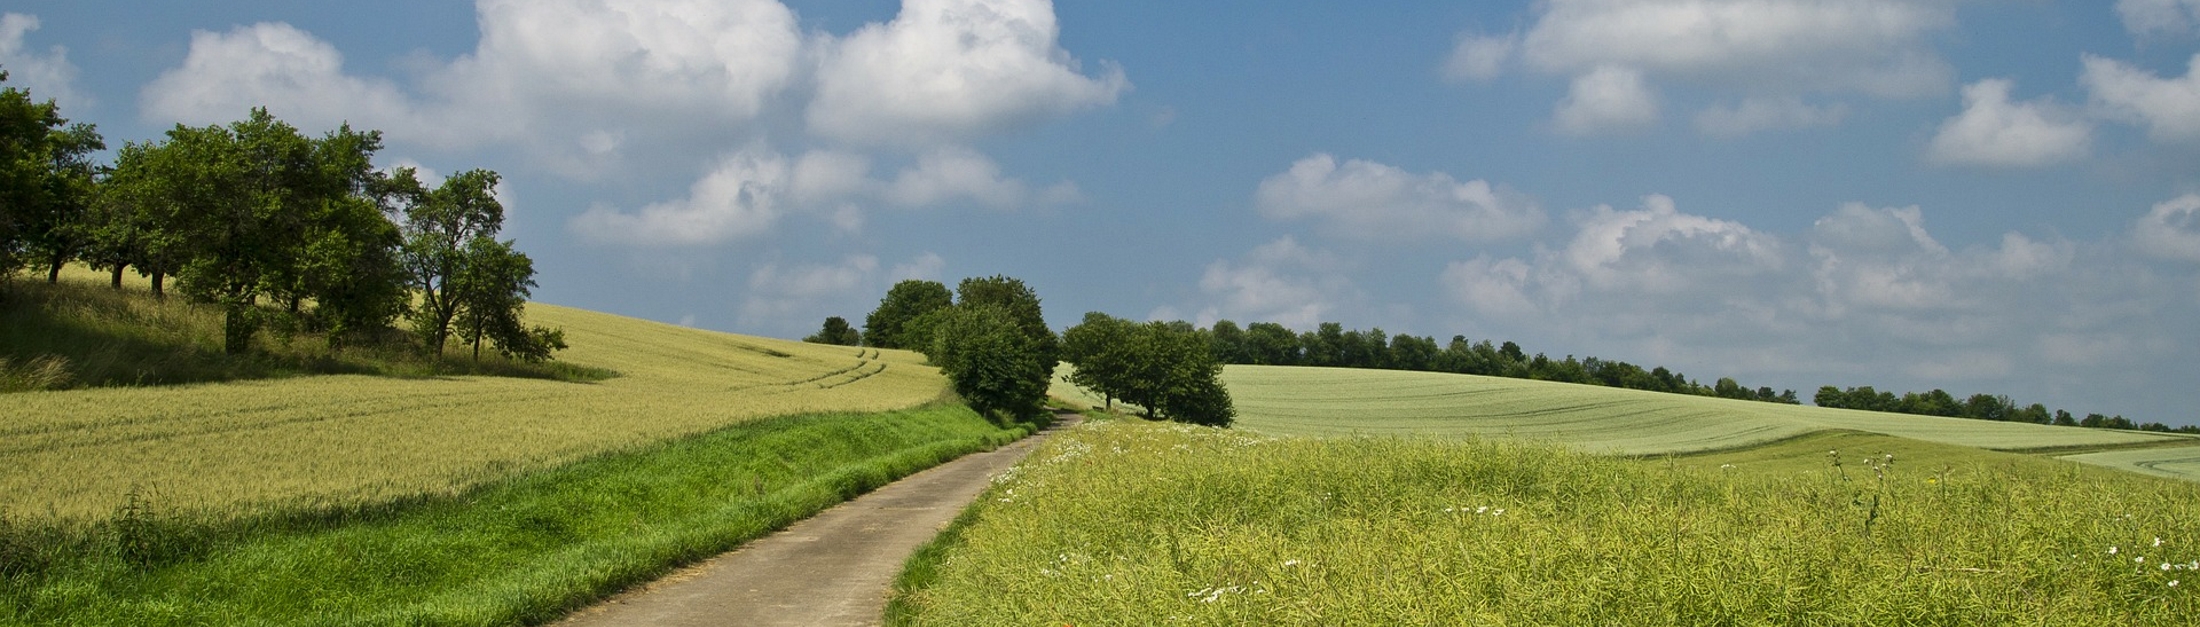 Ein Weg führt durch grüne Felder, am blauen Himmel kleine Wolken